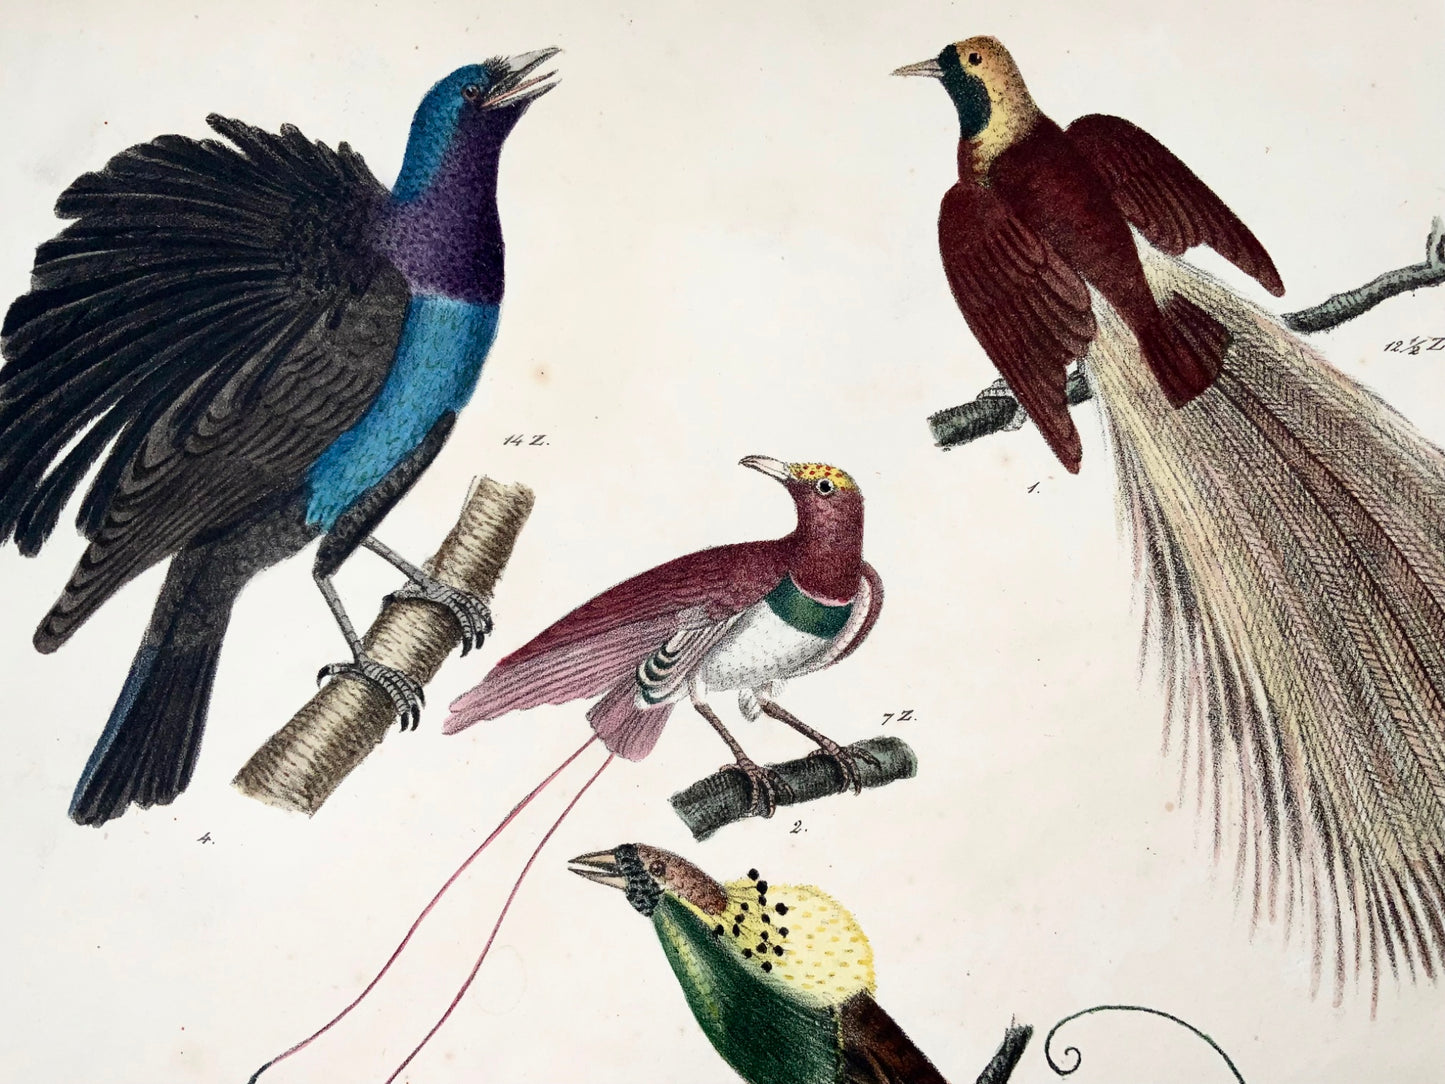 1819 Oiseaux de Paradis, ornithologie, Strack, lithographie à la craie, couleur à la main